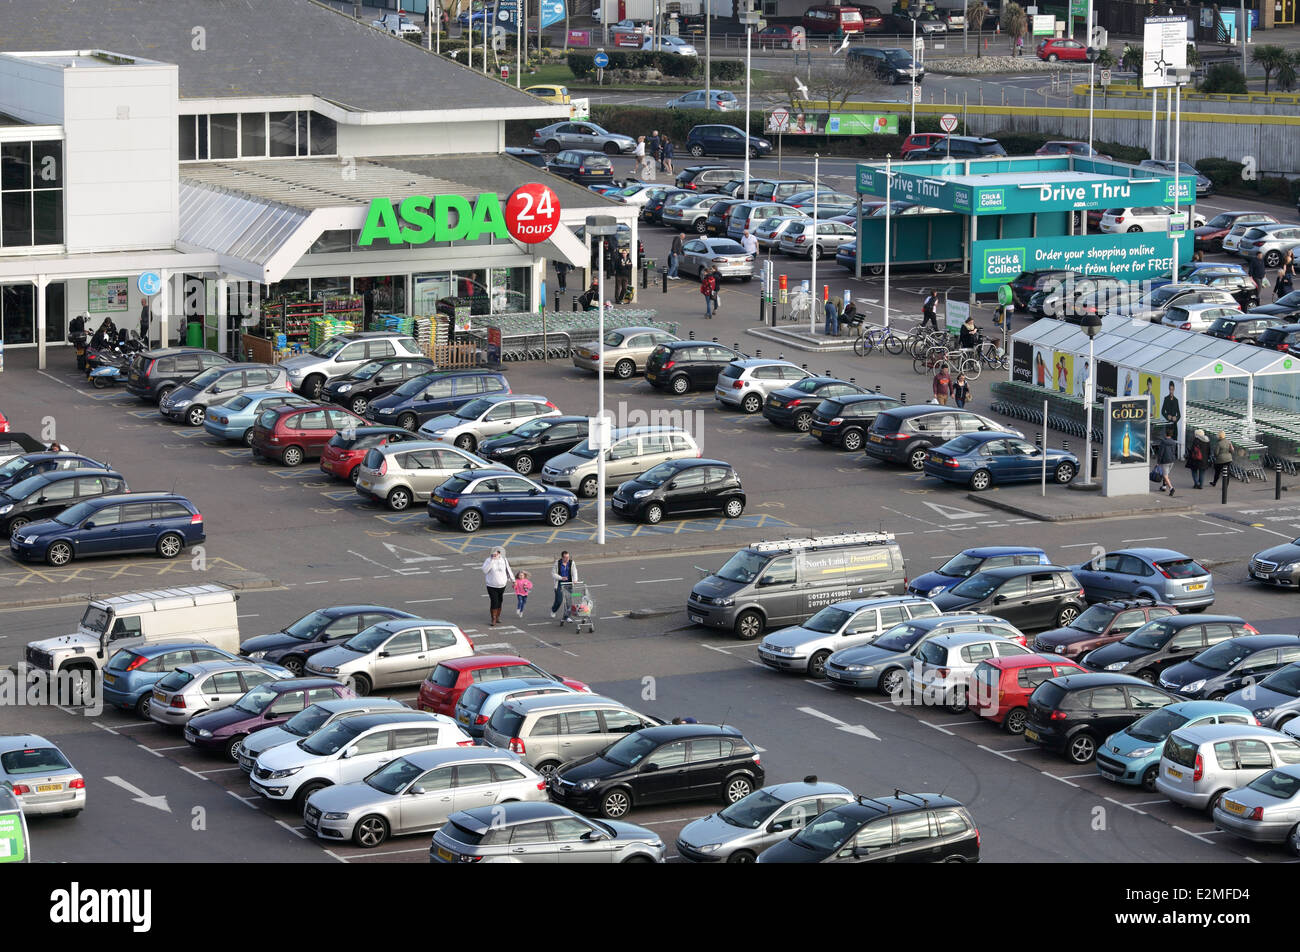 L'ingresso al supermercato Asda, Brighton Marina. Drive thru " Fare clic e raccogliere" area a destra. Foto Stock